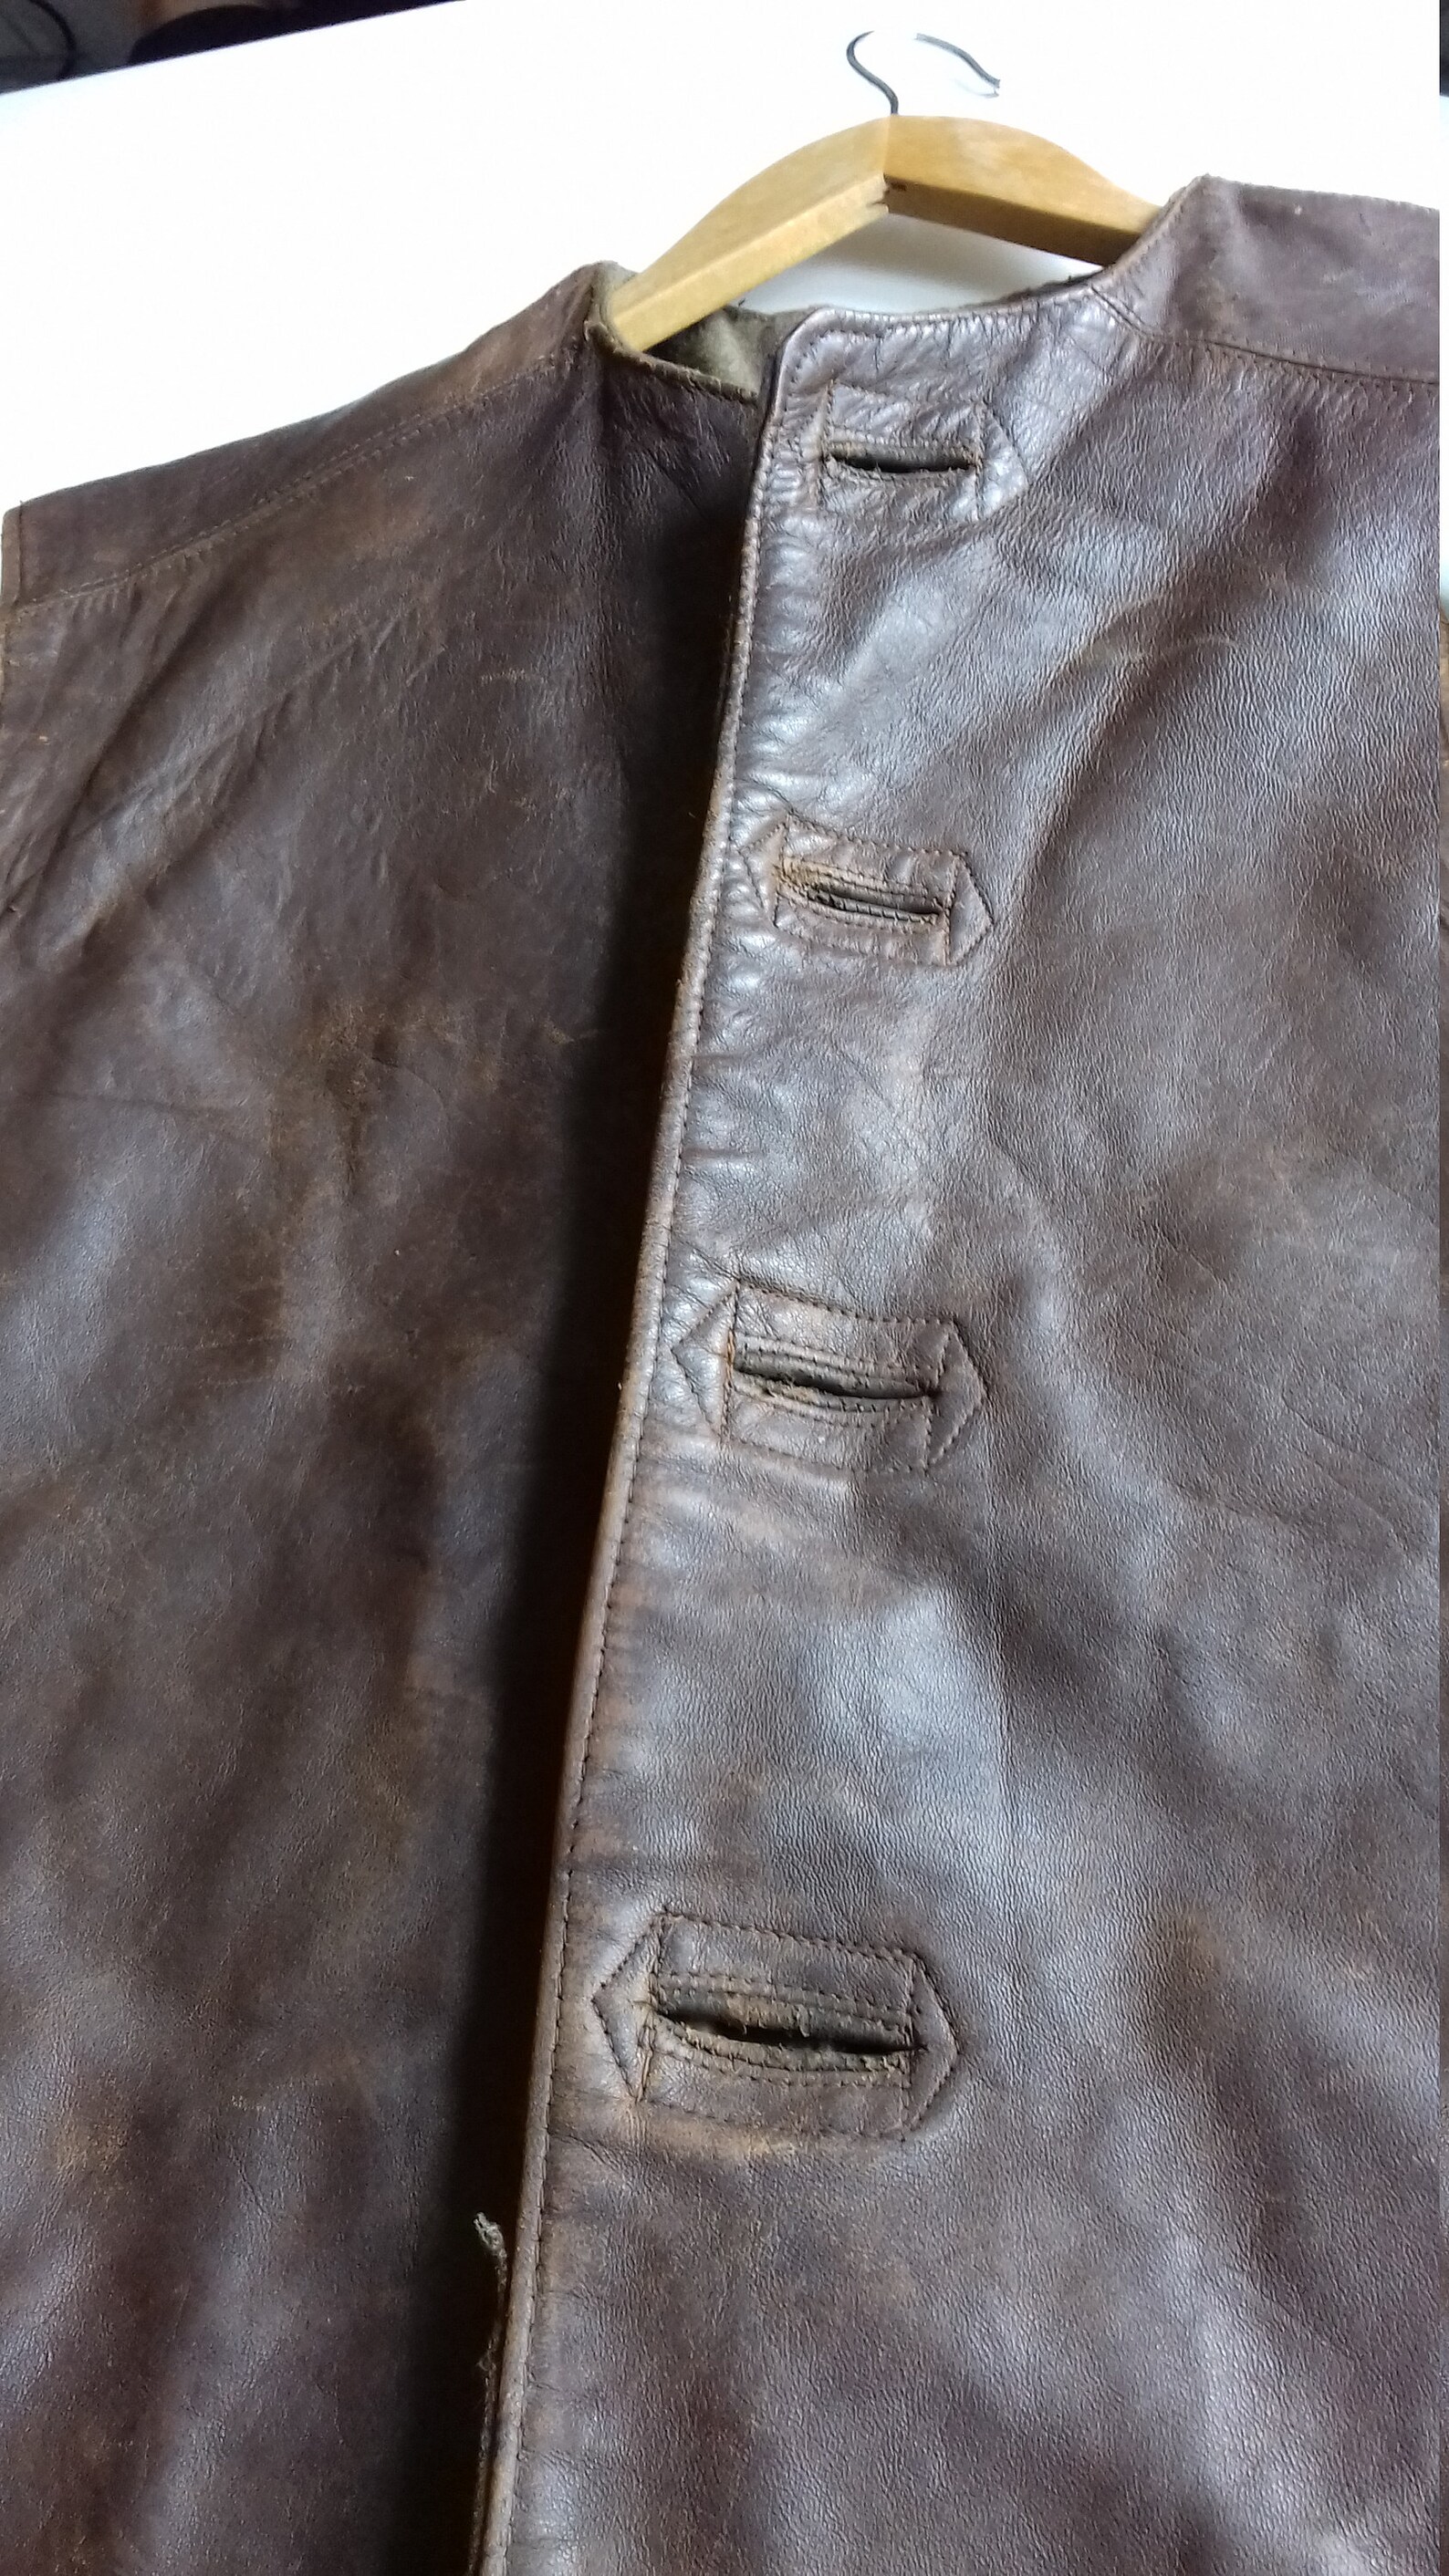 WW2 leather jerkin | Etsy